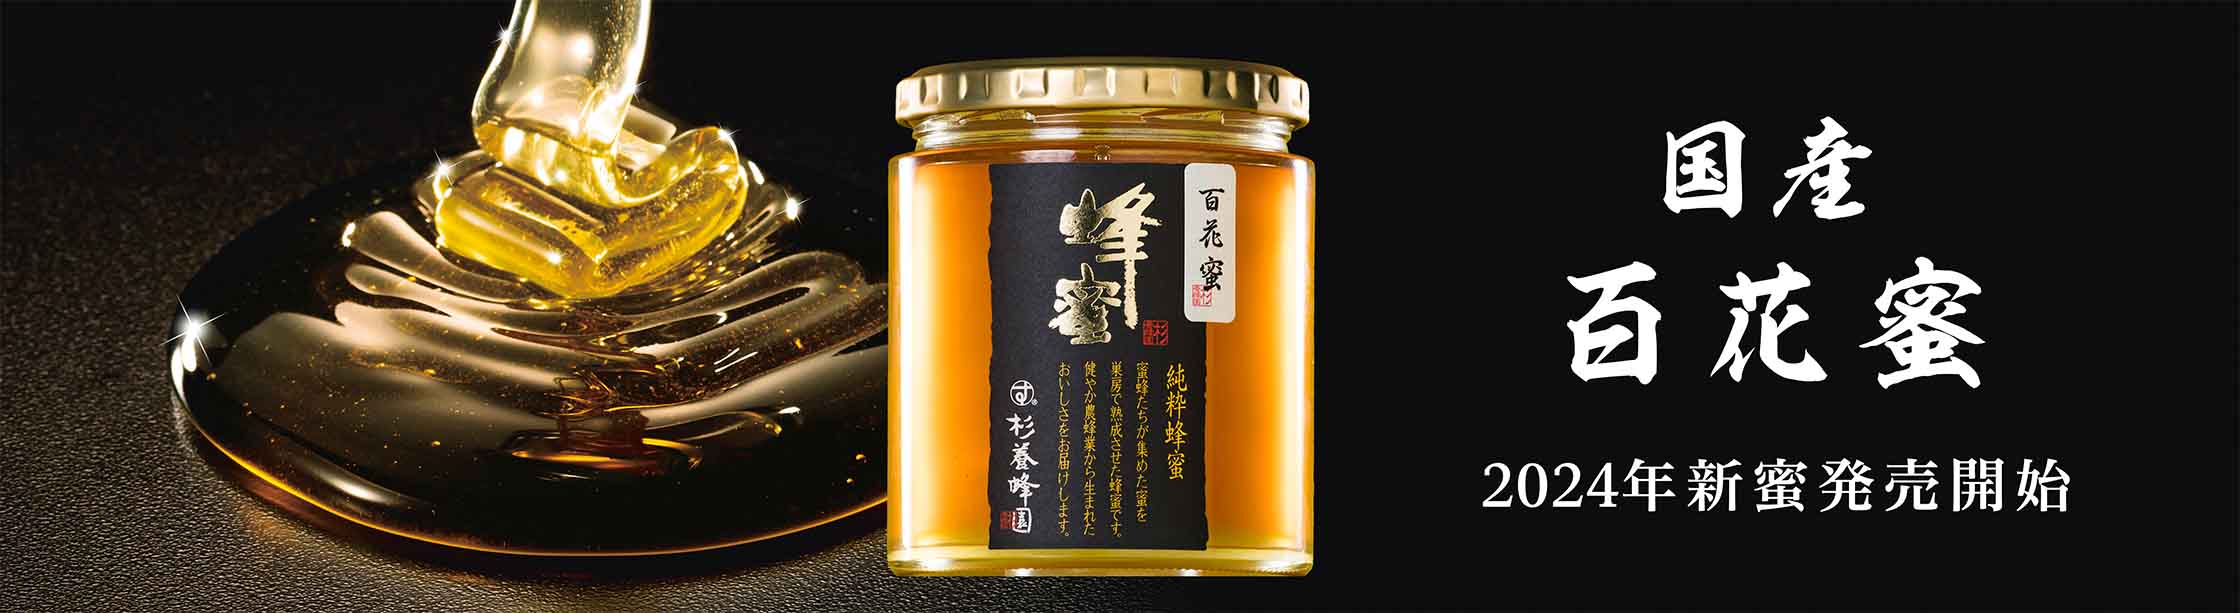 Made in Japan Wild Flower Honey